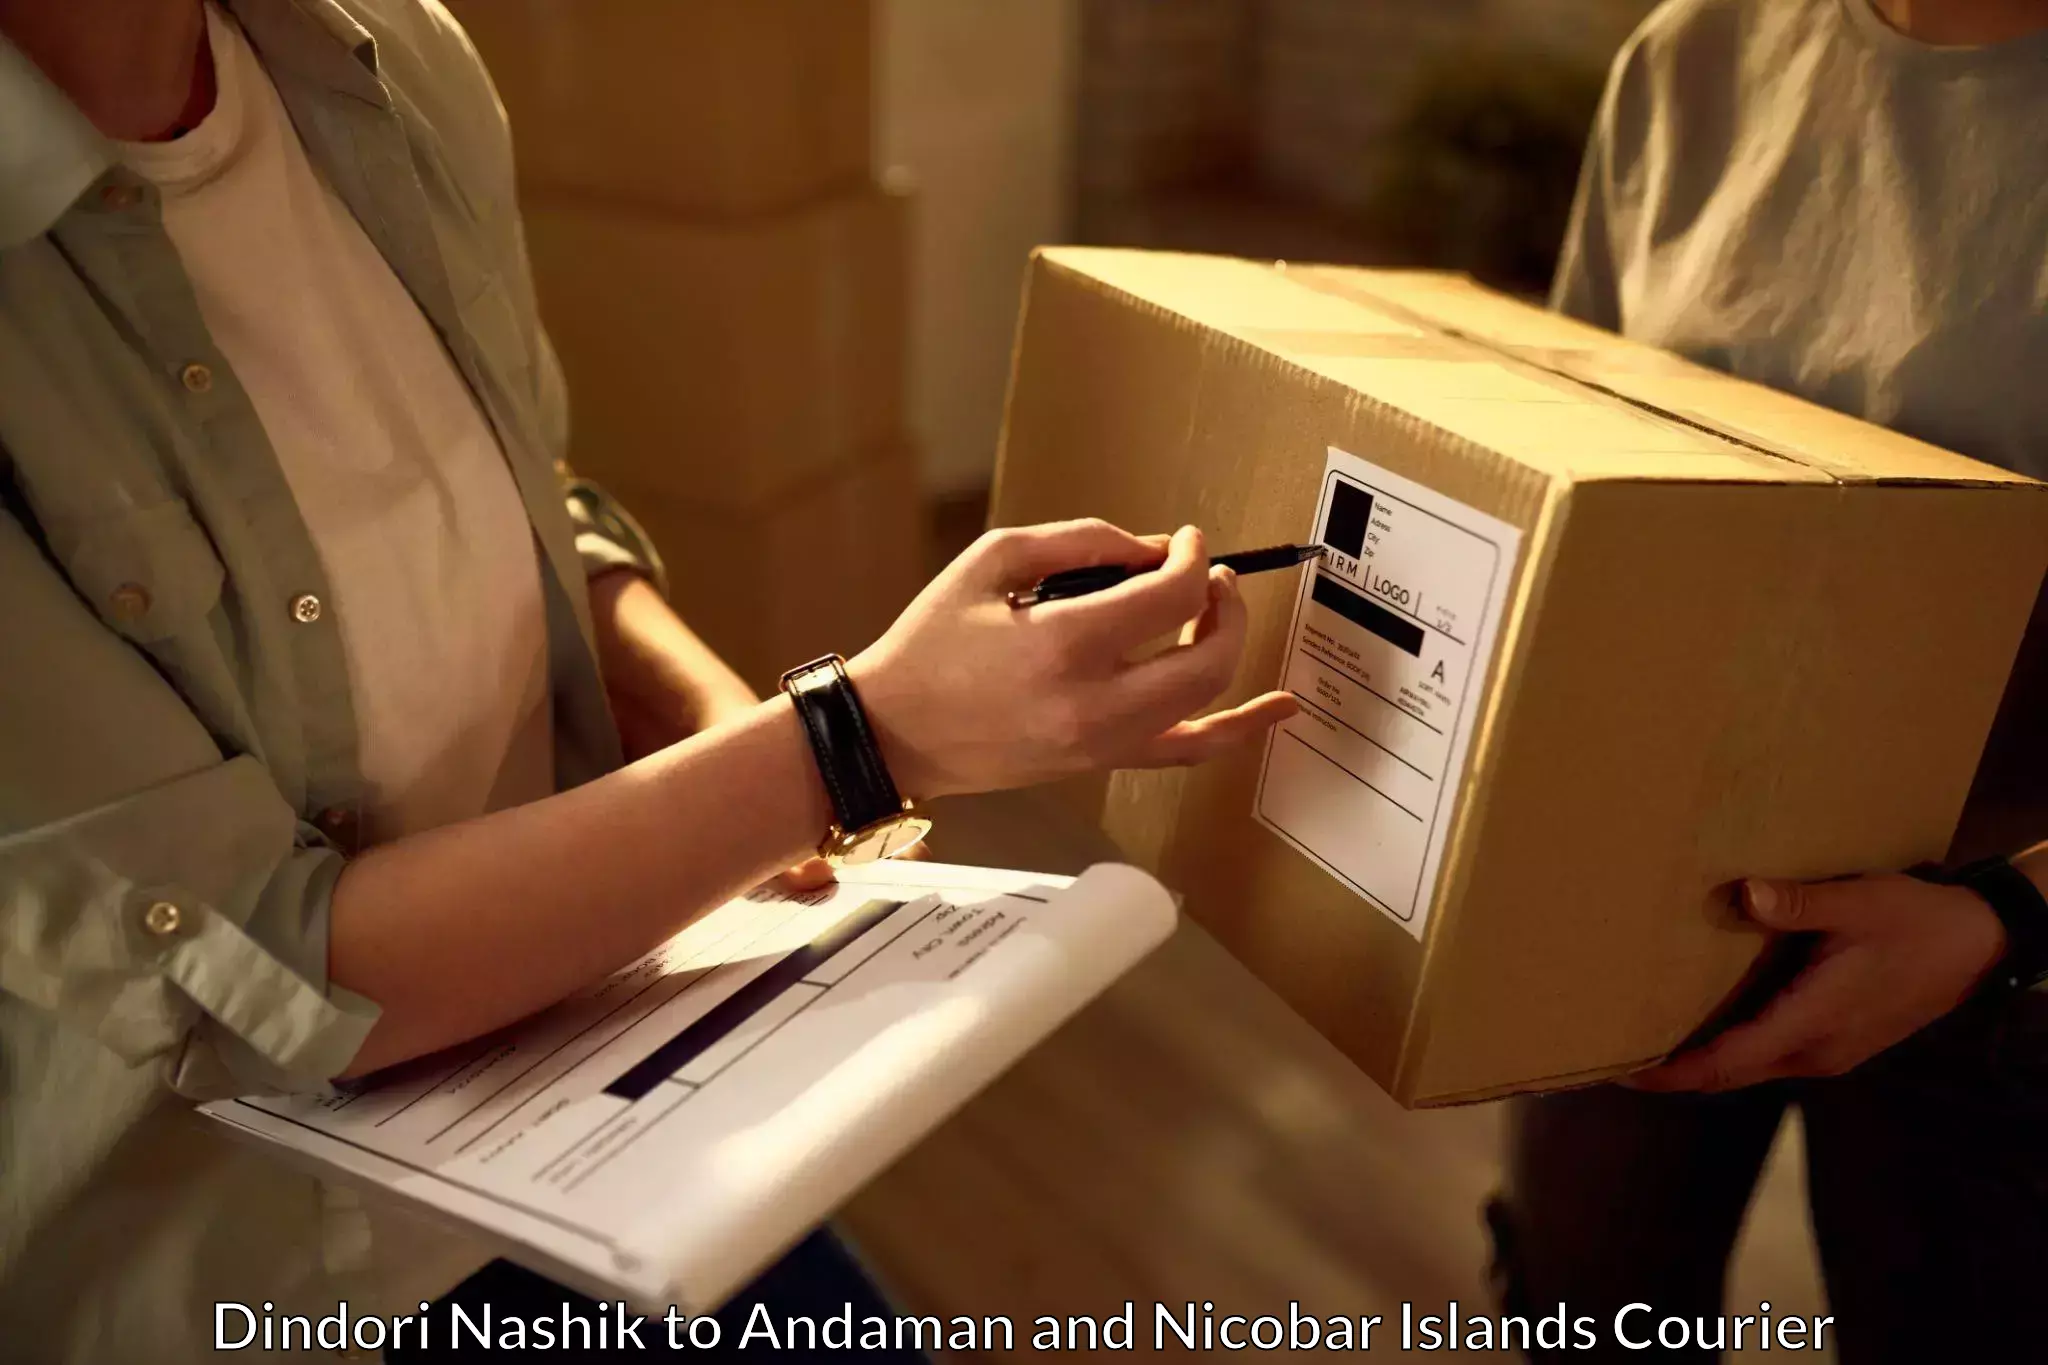 Reliable courier service Dindori Nashik to Andaman and Nicobar Islands